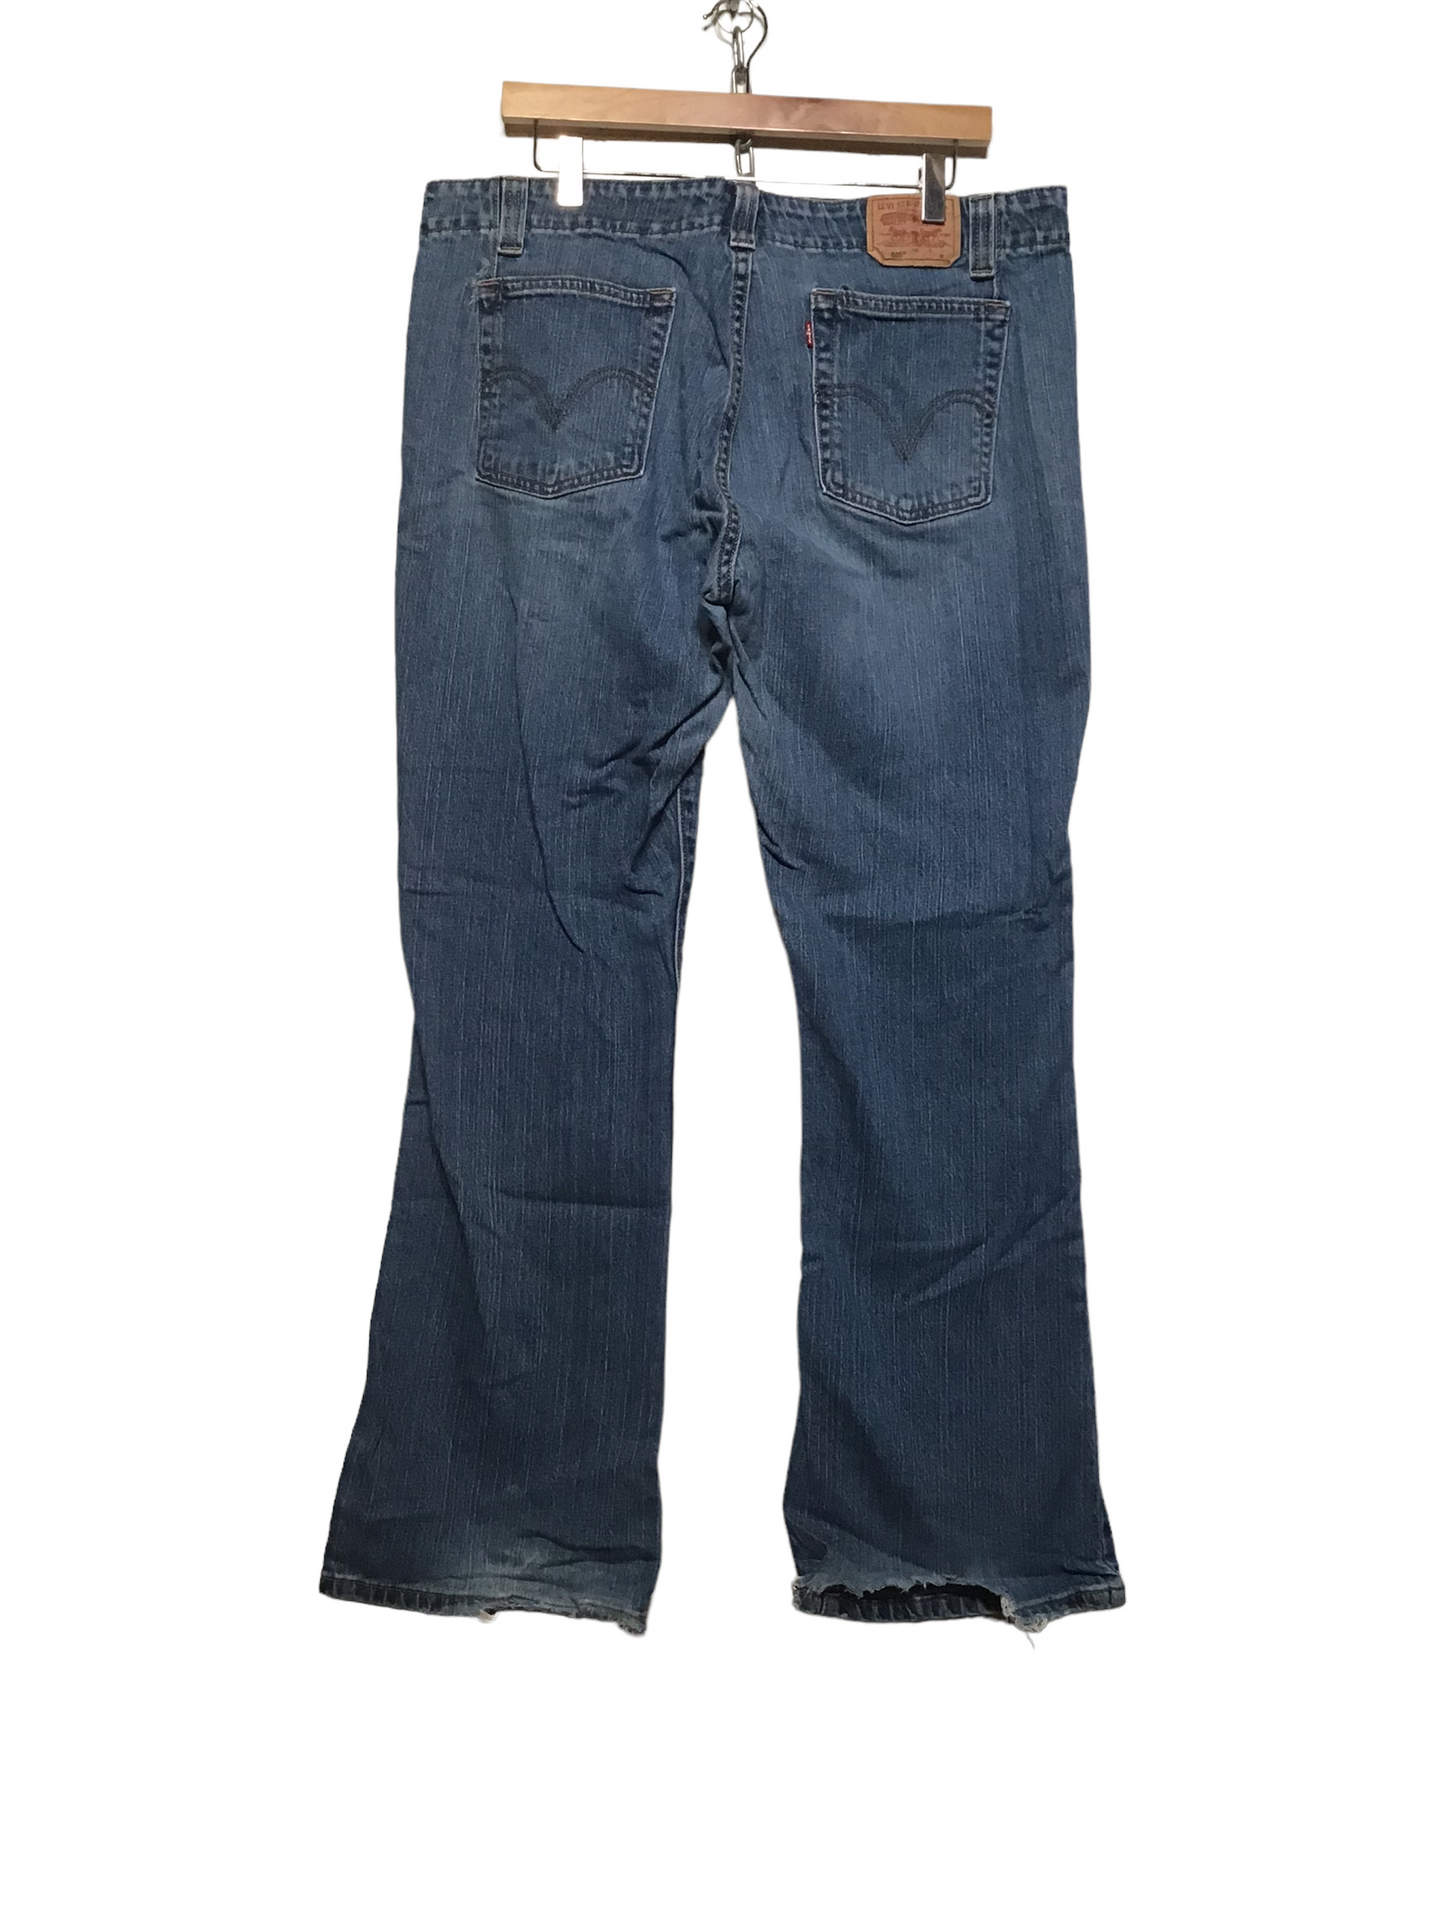 Levi 525 Jeans (38X32) – Loft 68 Vintage